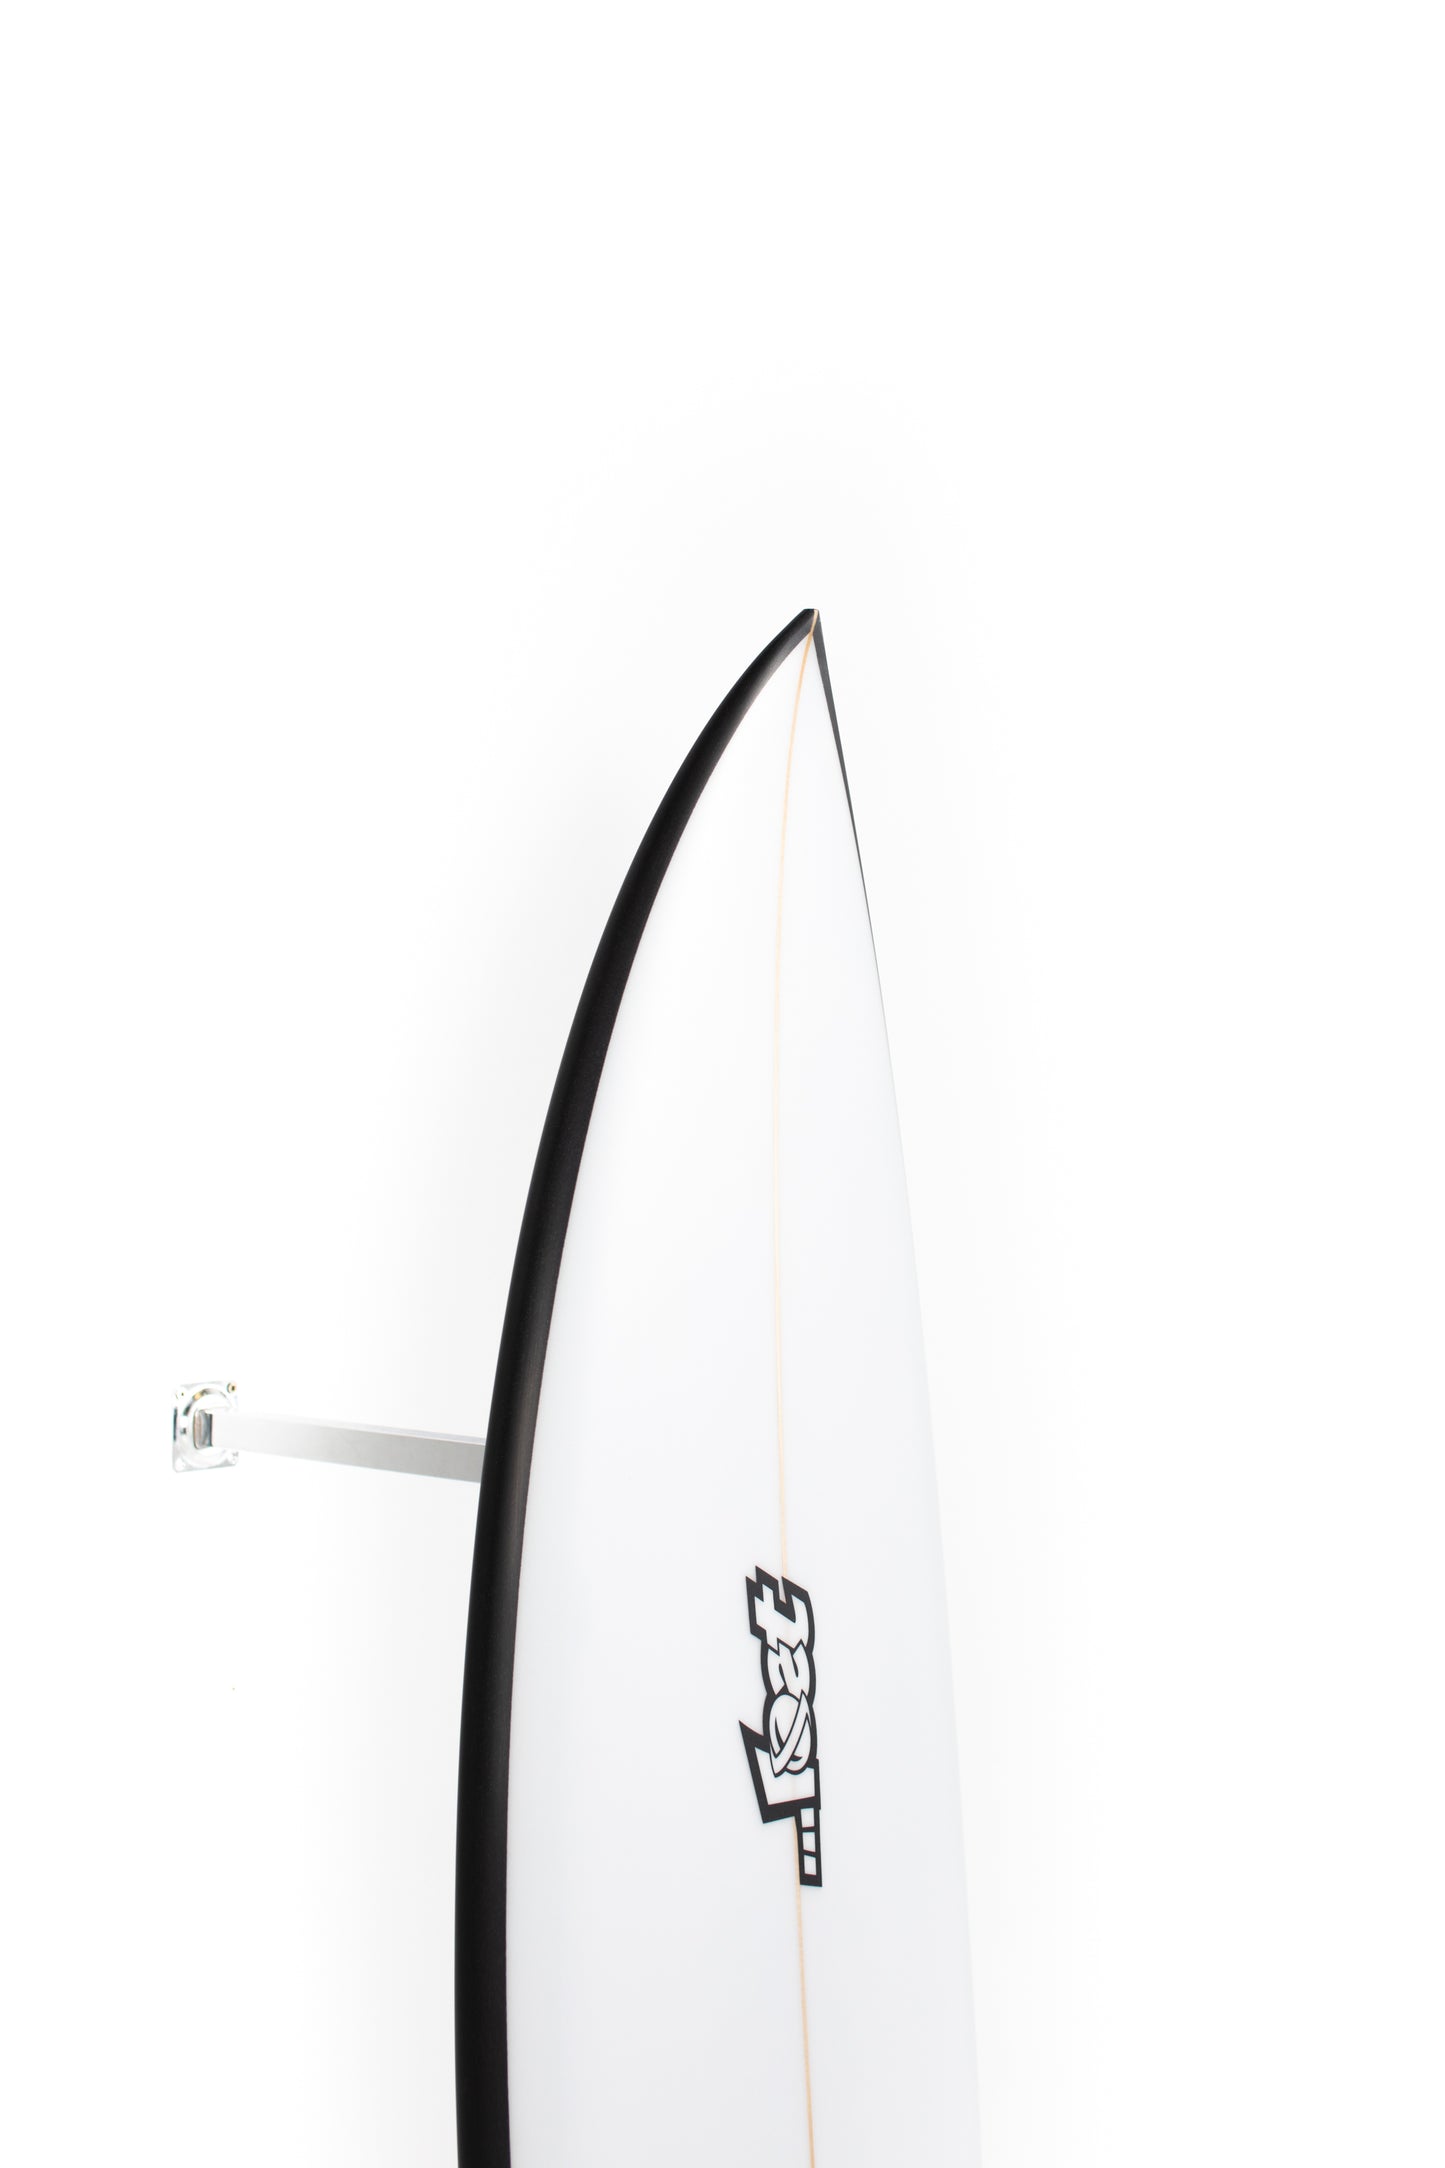 
                  
                    Pukas Surf Shop - Lost Surfboard - SABO TAJ by Matt Biolos - 5’9” x 18,75 x 2,38 x 28L - MH16064
                  
                